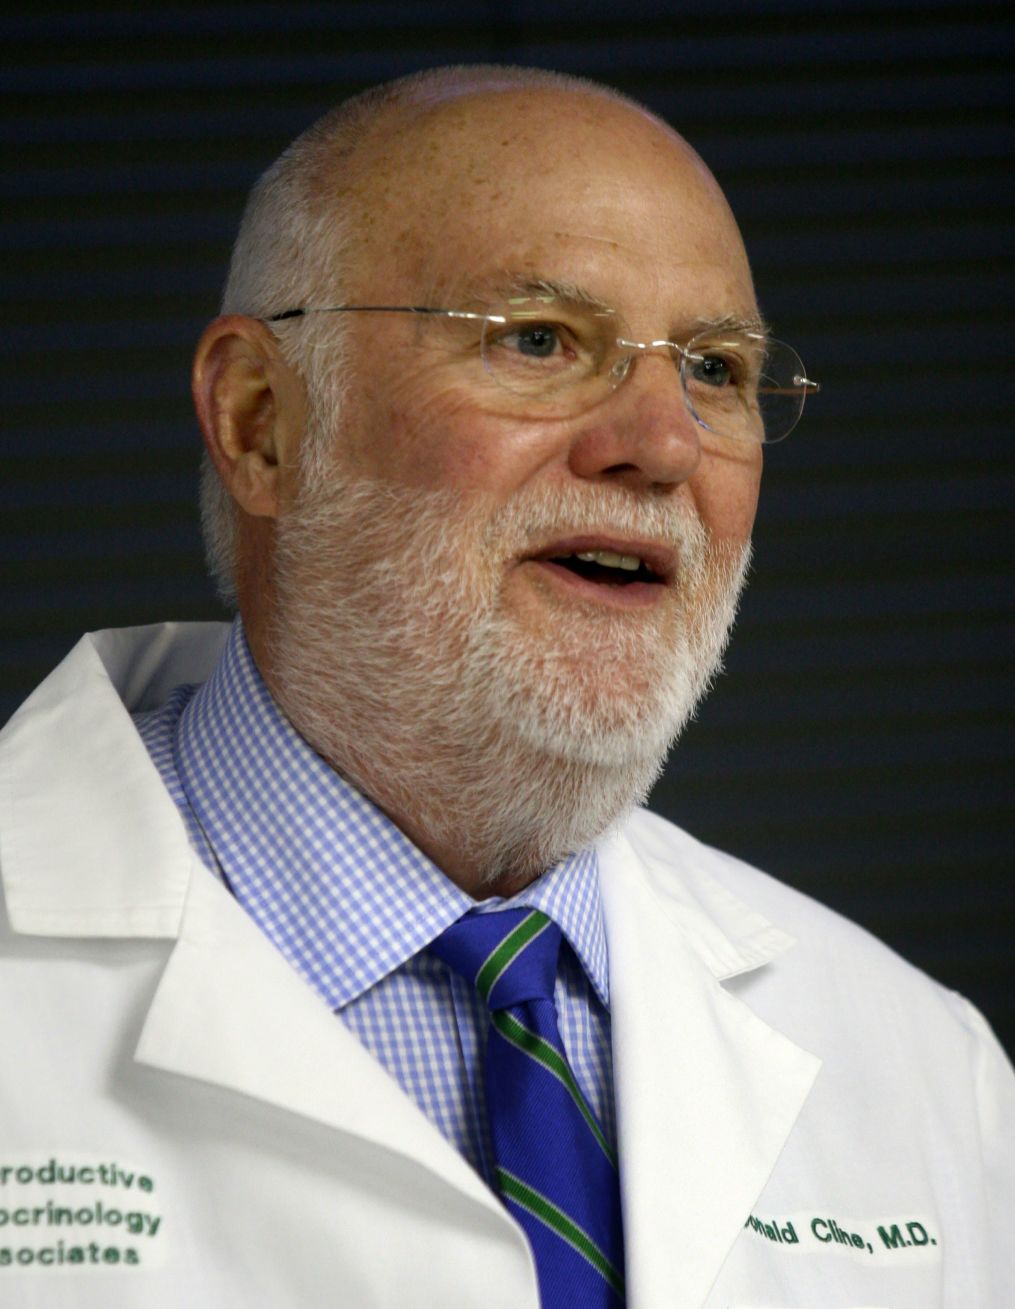 Dr. Donald Cline